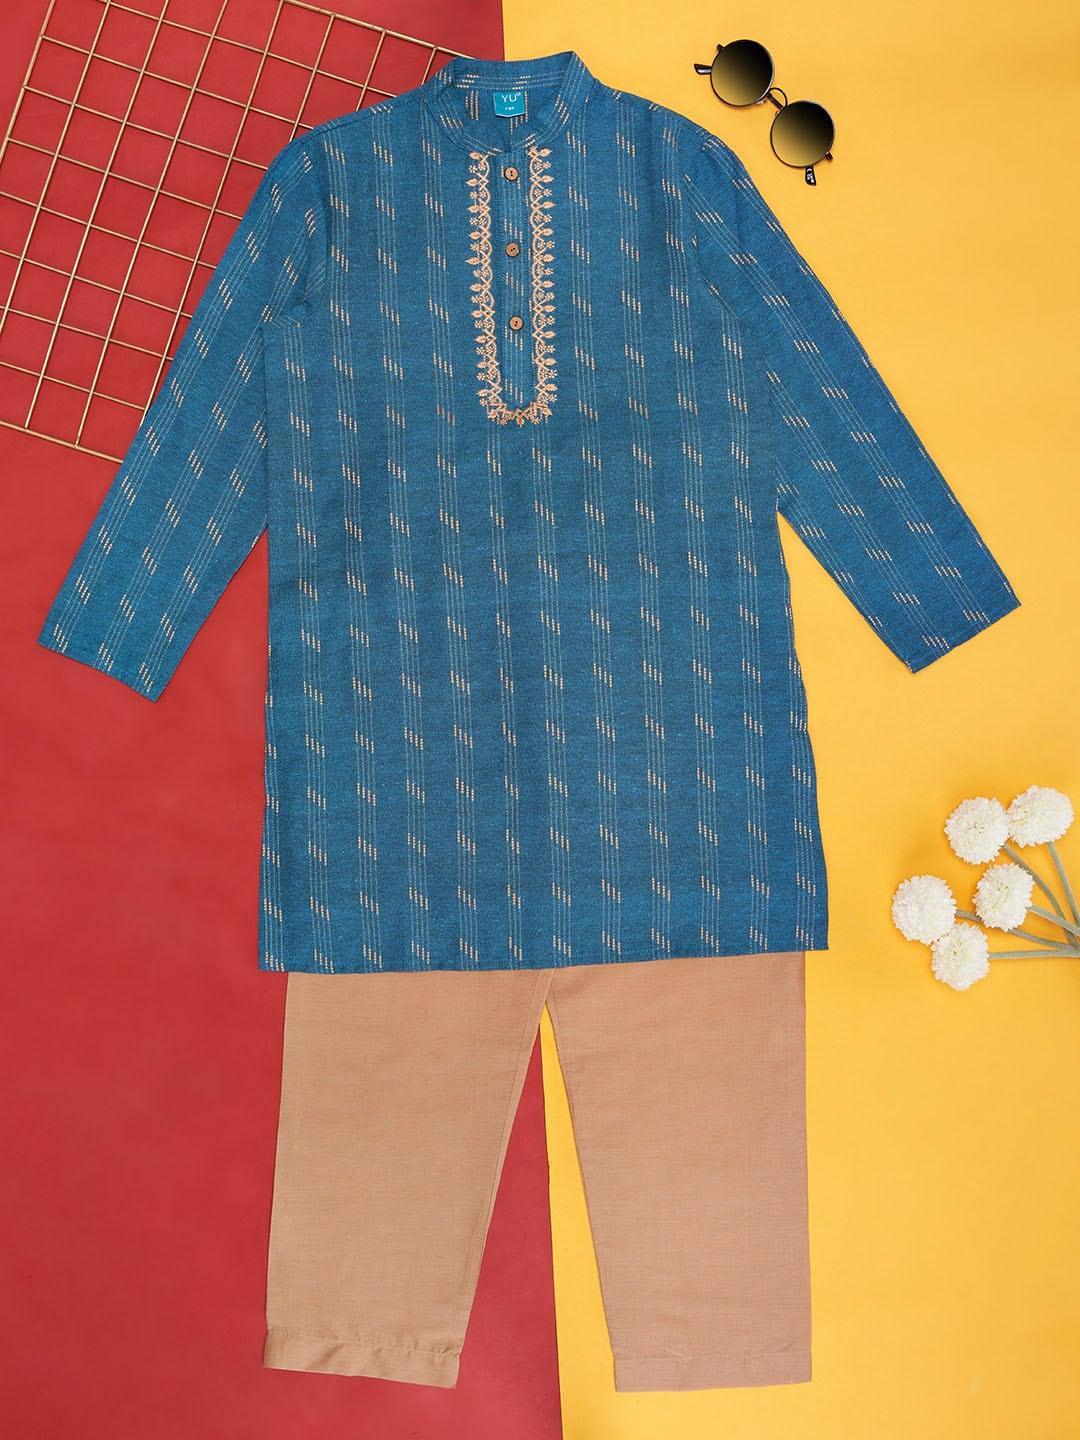 yu-by-pantaloons-boys-ethnic-motifs-printed-pure-cotton-straight-kurta-with-pyjamas